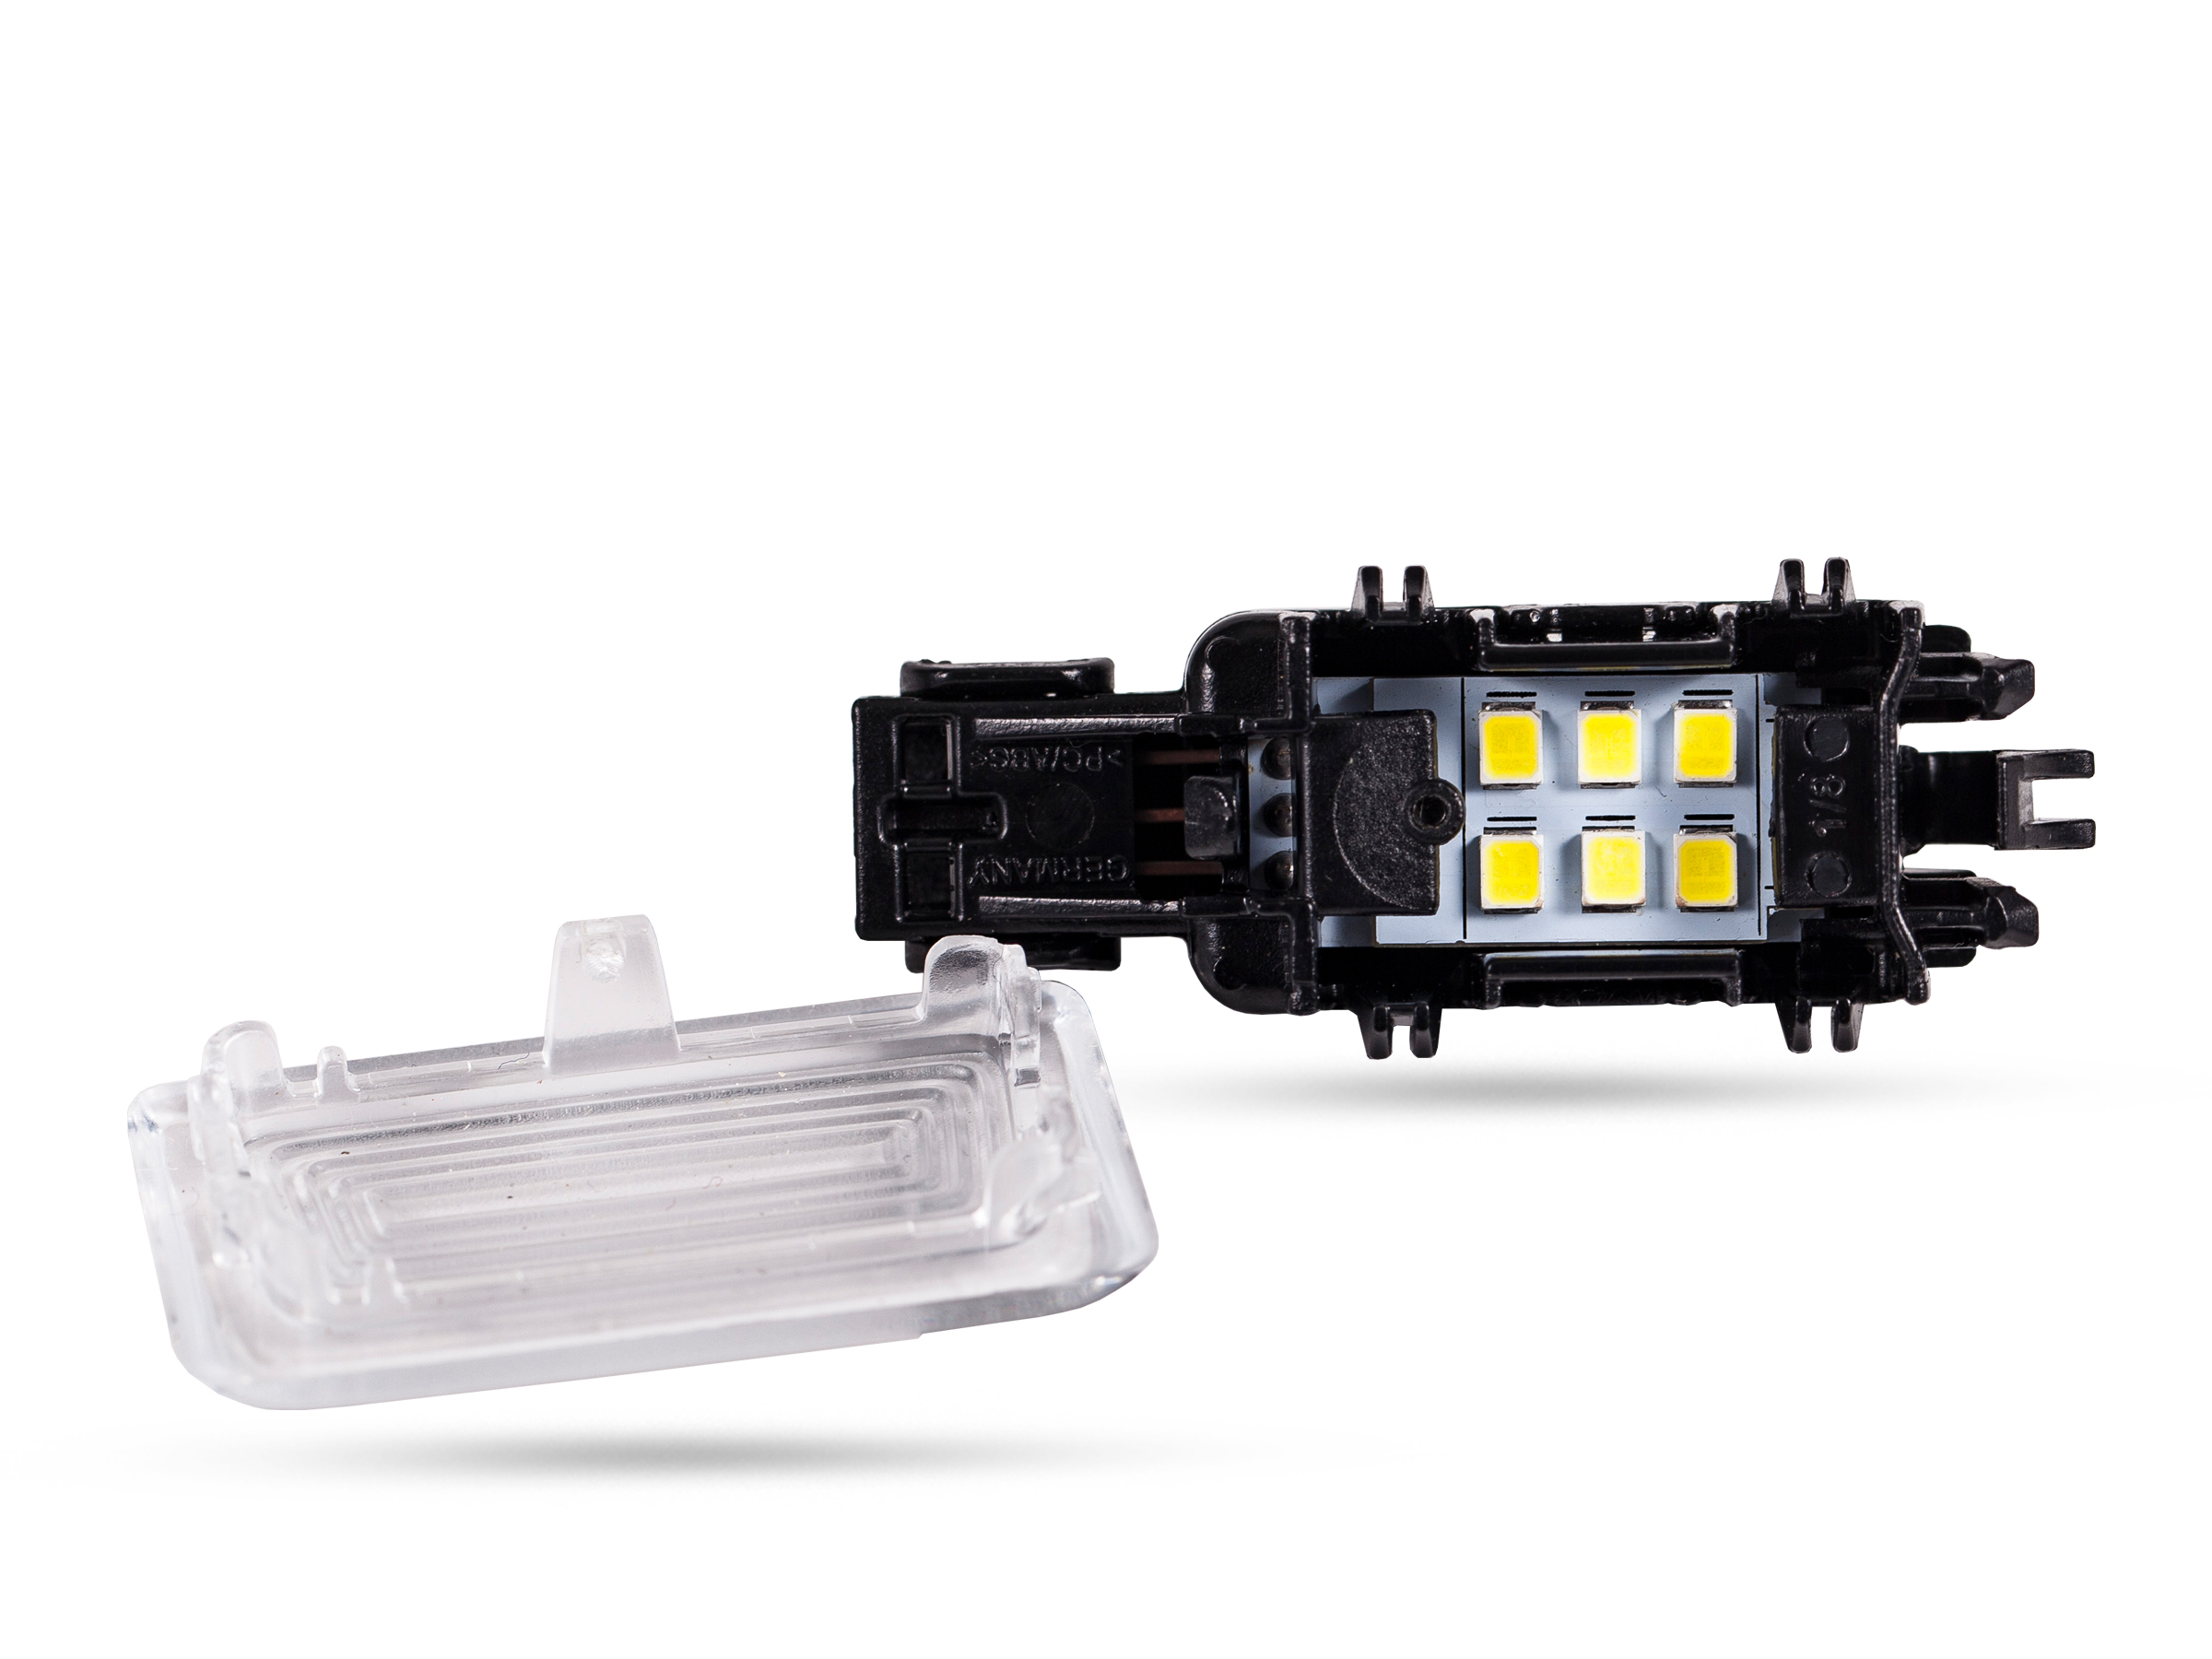 6x2835 SMD LED Modulplatine Ausstiegsbeleuchtung für Volvo, LED  Ausstiegsbeleuchtung, LED Module, Auto Innenraumlicht, LED Auto  Innenraumbeleuchtung